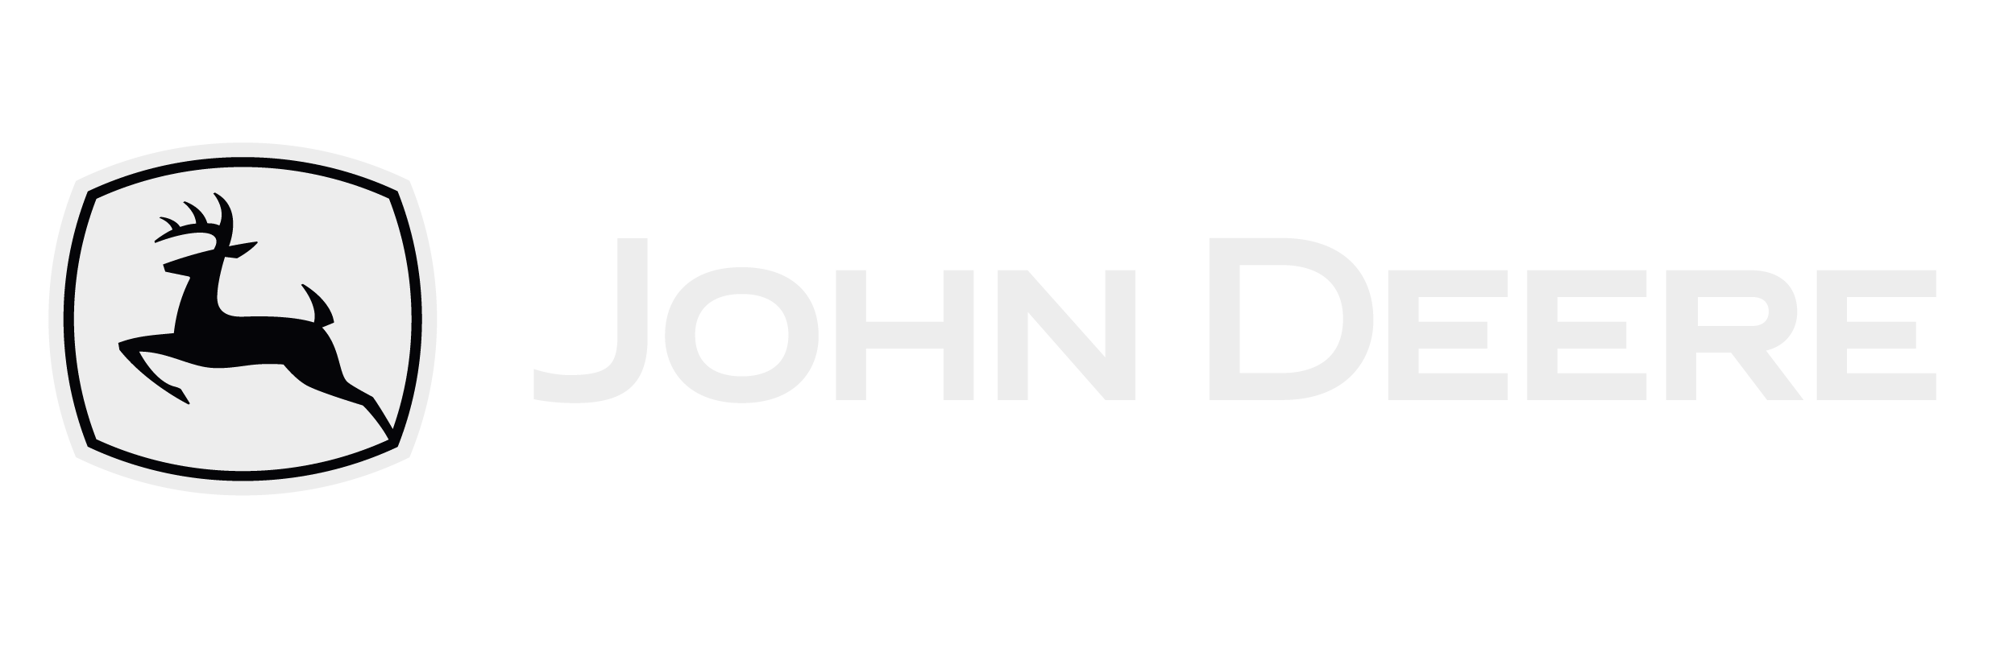 John_Deere_Weißgrau_test